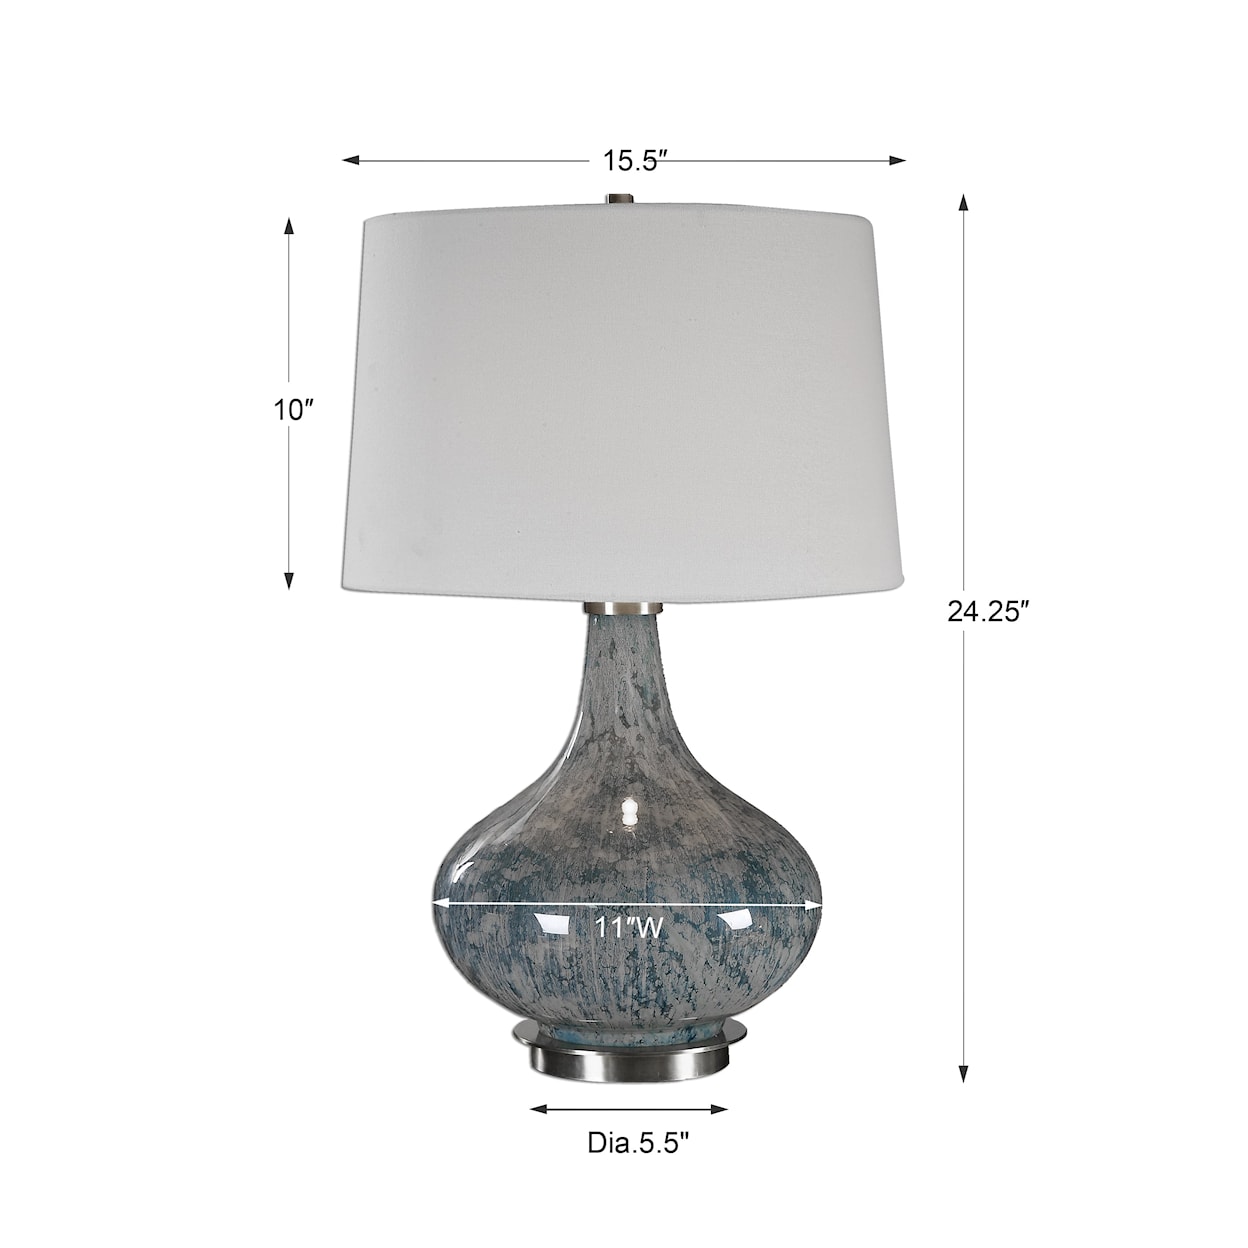 Uttermost Table Lamps Celinda Blue Gray Glass Lamp